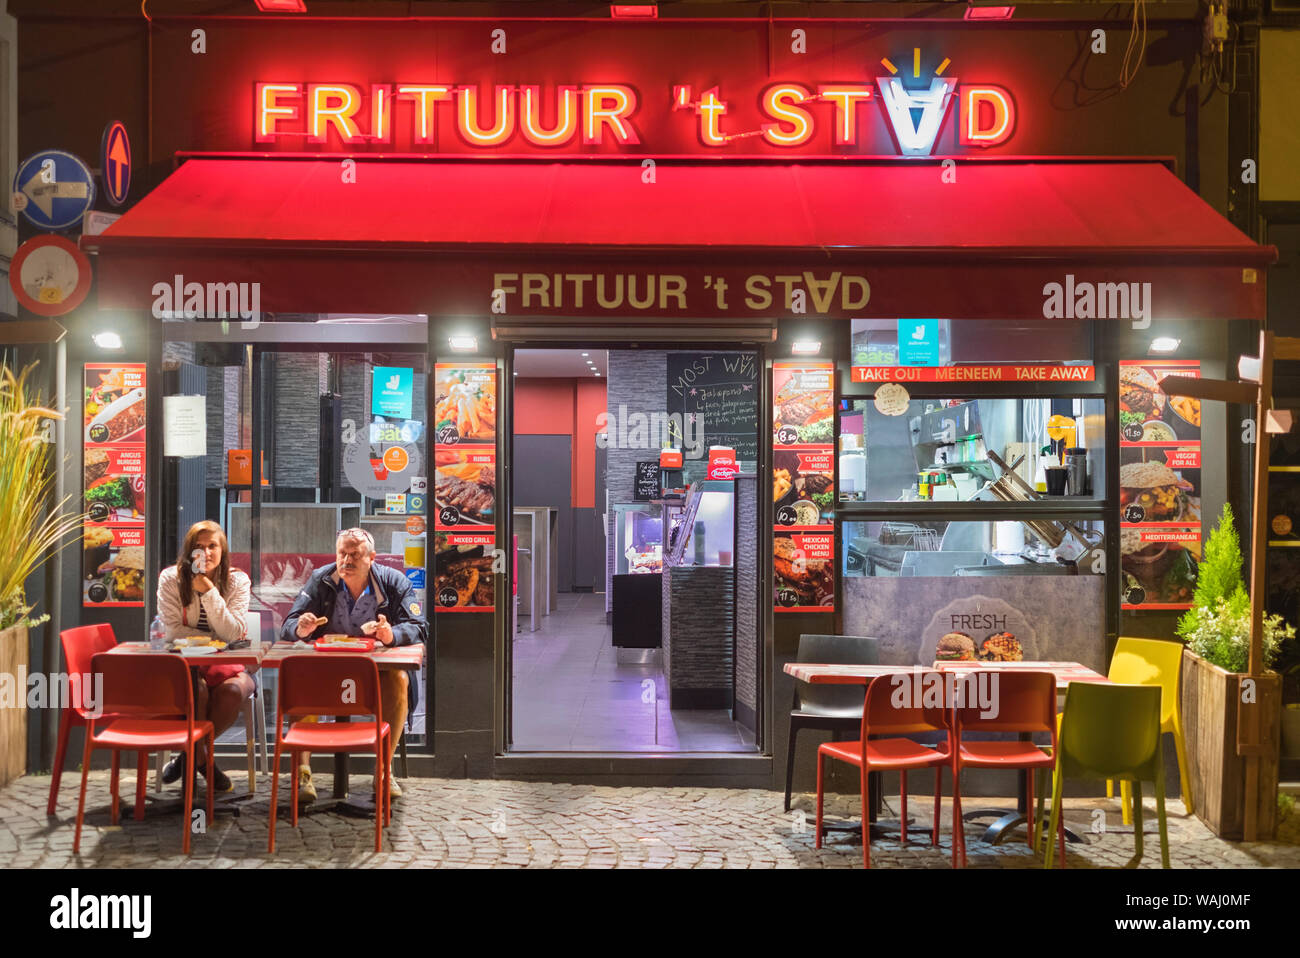 Frituur Chip Shop Melkmarkt Old Town Antwerp Belgium Stock Photo